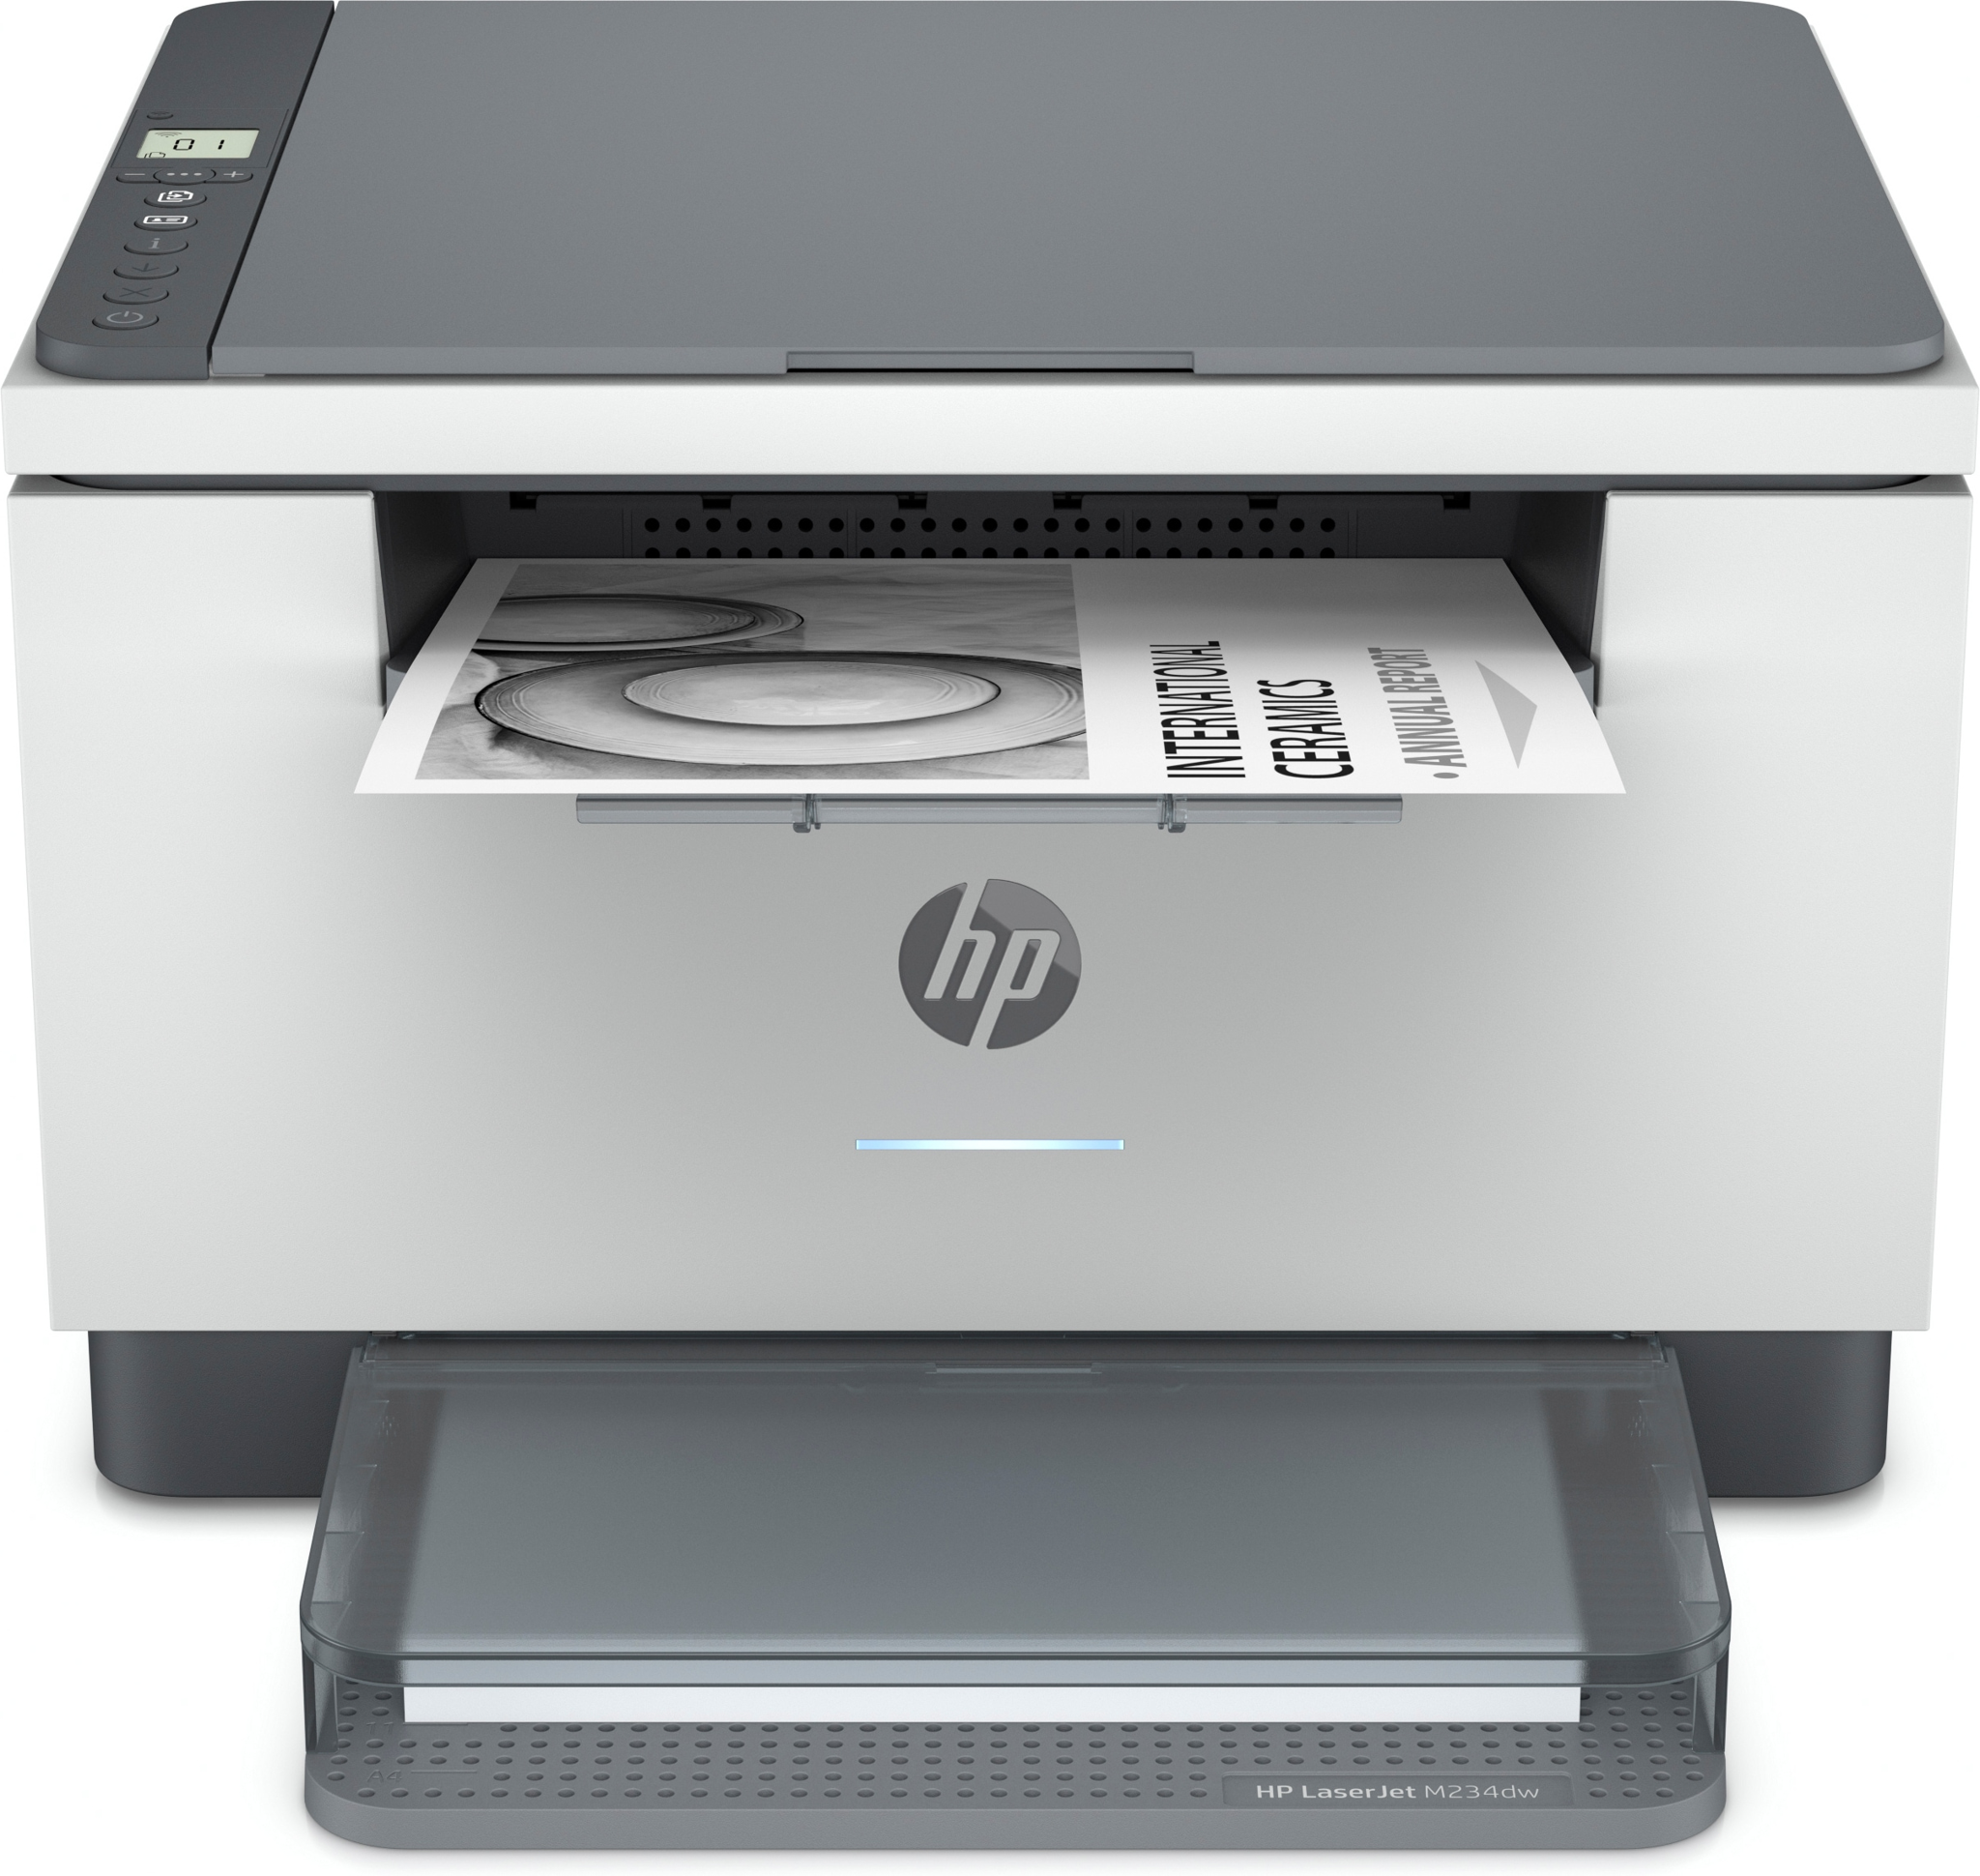 Bild von HP LaserJet MFP M234dw Drucker - Schwarzweiß - Drucker für Kleine Büros - Drucken - Kopieren - Scannen - beidseitiger Druck; Scannen an E-Mail; Scannen an PDF - Laser - Monodruck - 1200 x 1200 DPI - A4 - Direktdruck - Grau